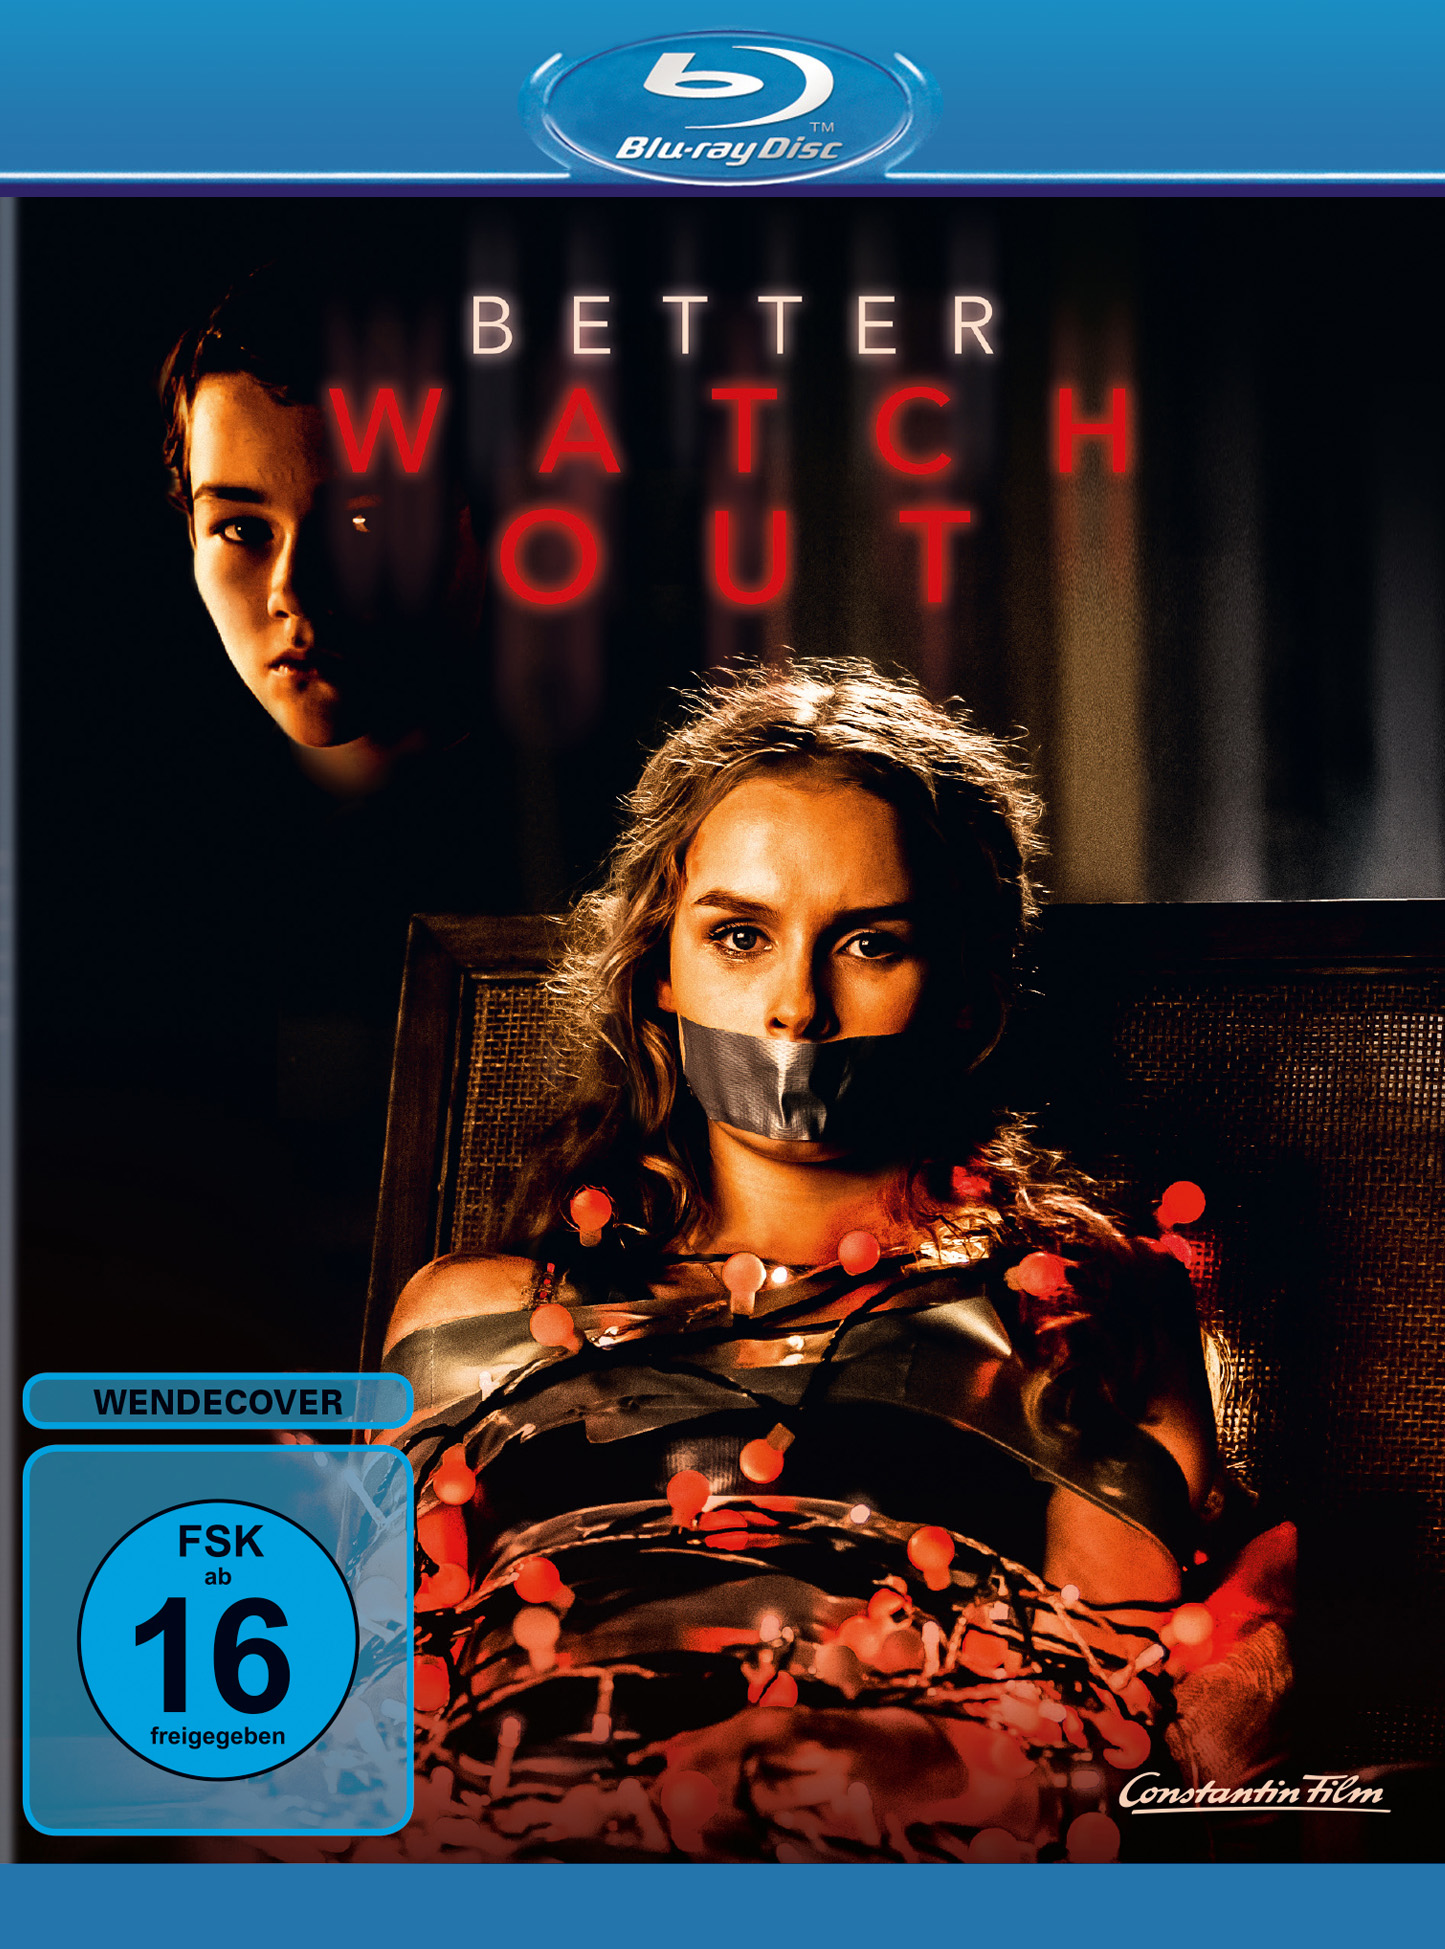 Blu-ray Cover zu „Better Watch Out“, von ©Constantin Film